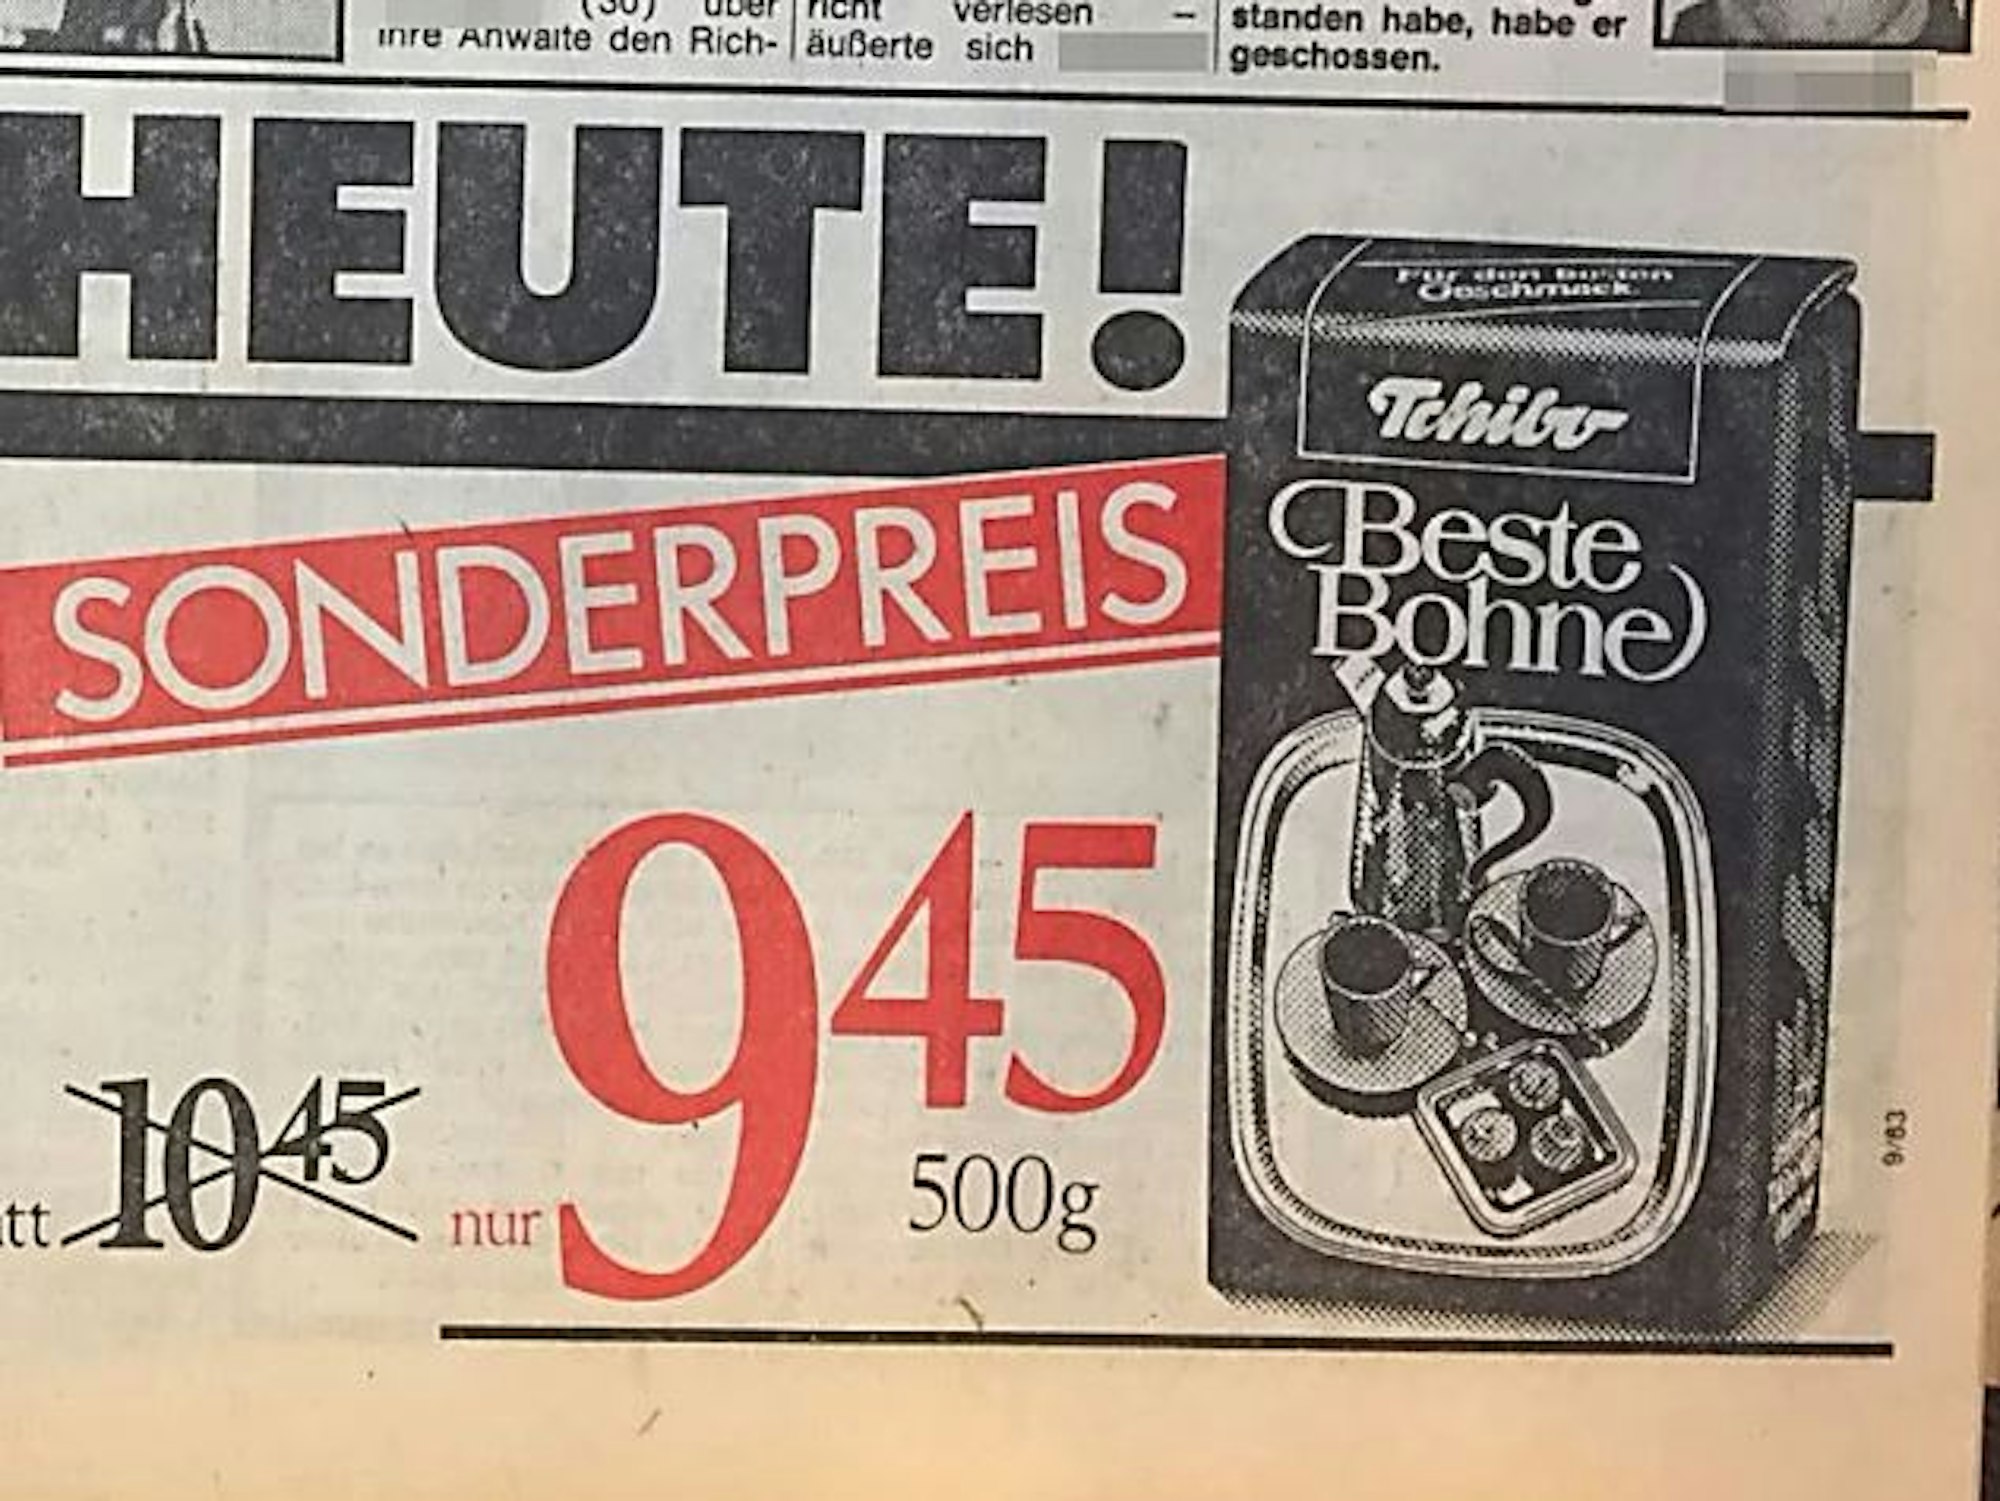 Das Foto zeigt Kaffee-Werbung von 1983 - der Preis damals in einem Kölner Supermarkt: 9,45 D-Mark.